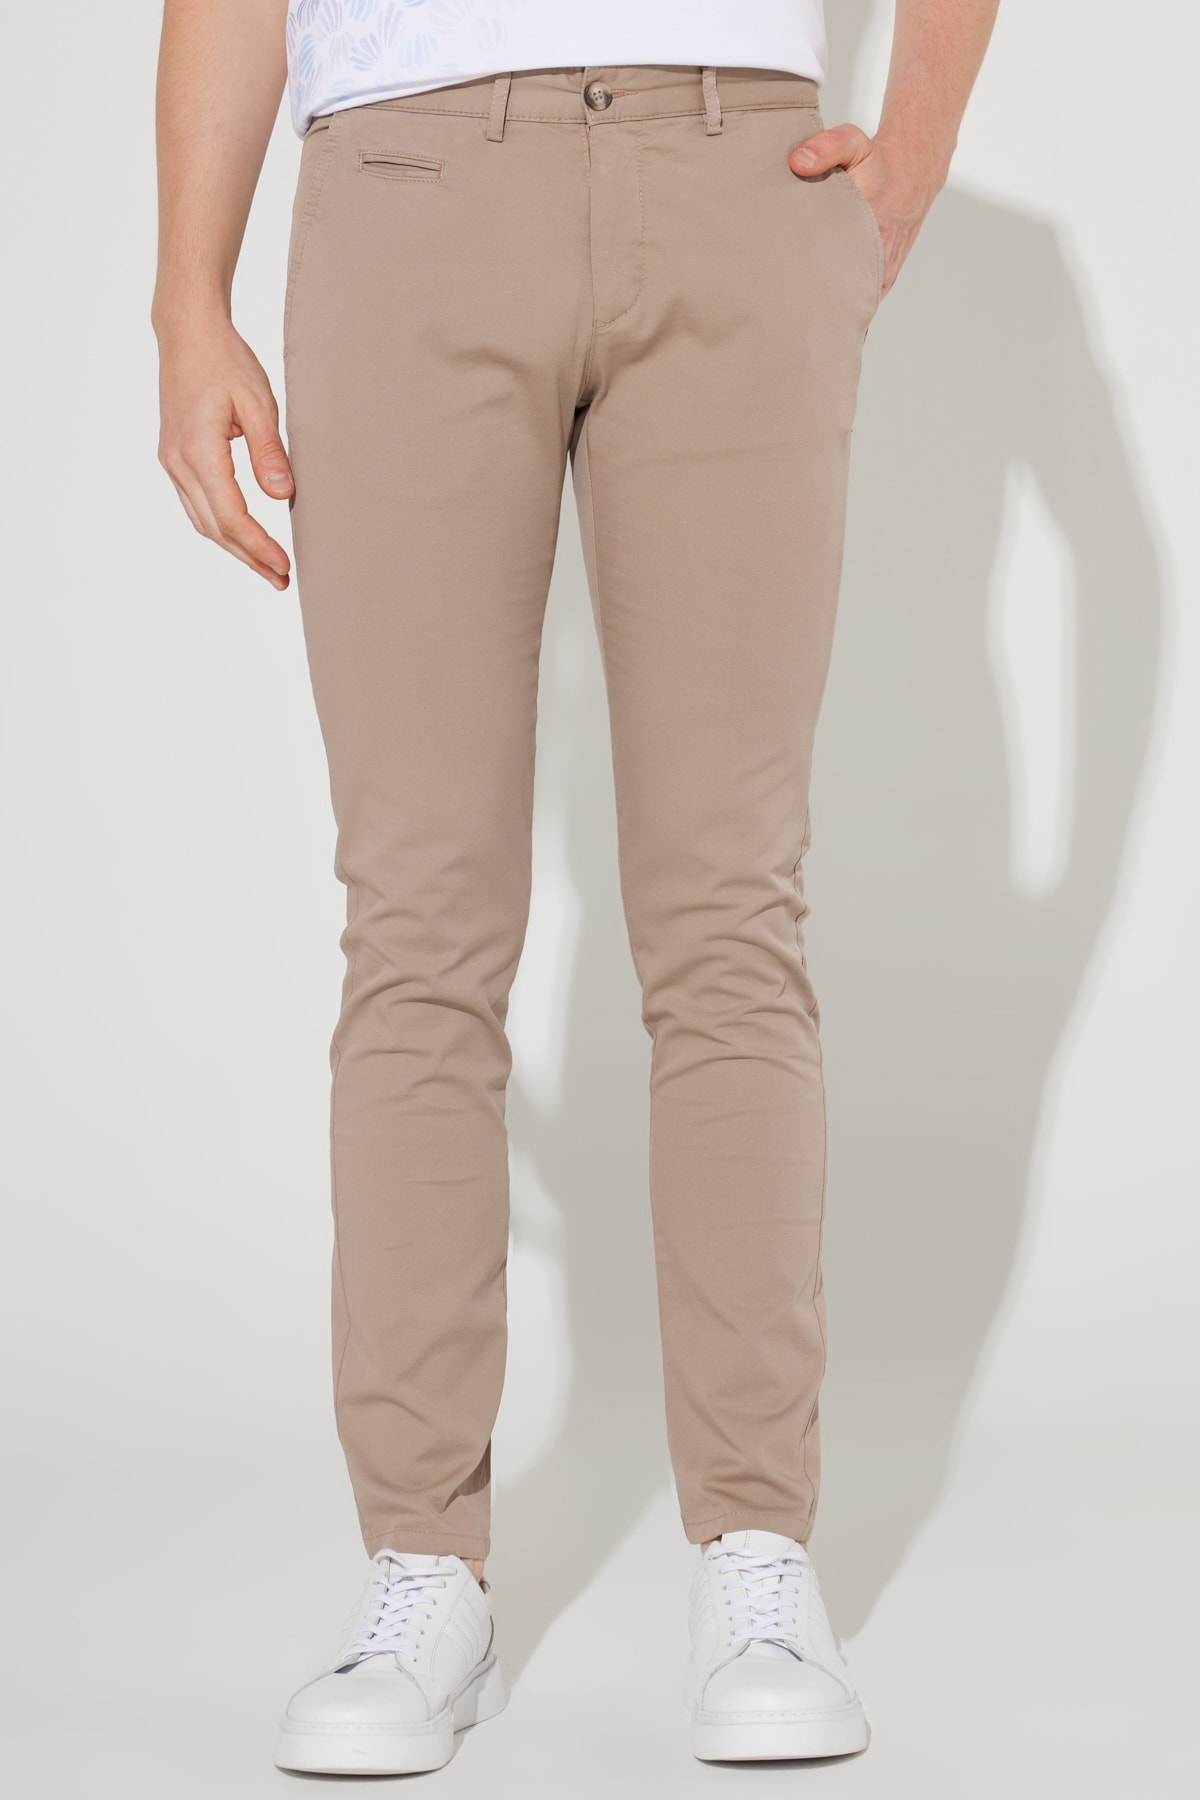 Levně AC&Co / Altınyıldız Classics Men's Beige Slim Fit Slim Fit Trousers with Side Pockets, Cotton Diagonal Pattern Flexible Trousers.